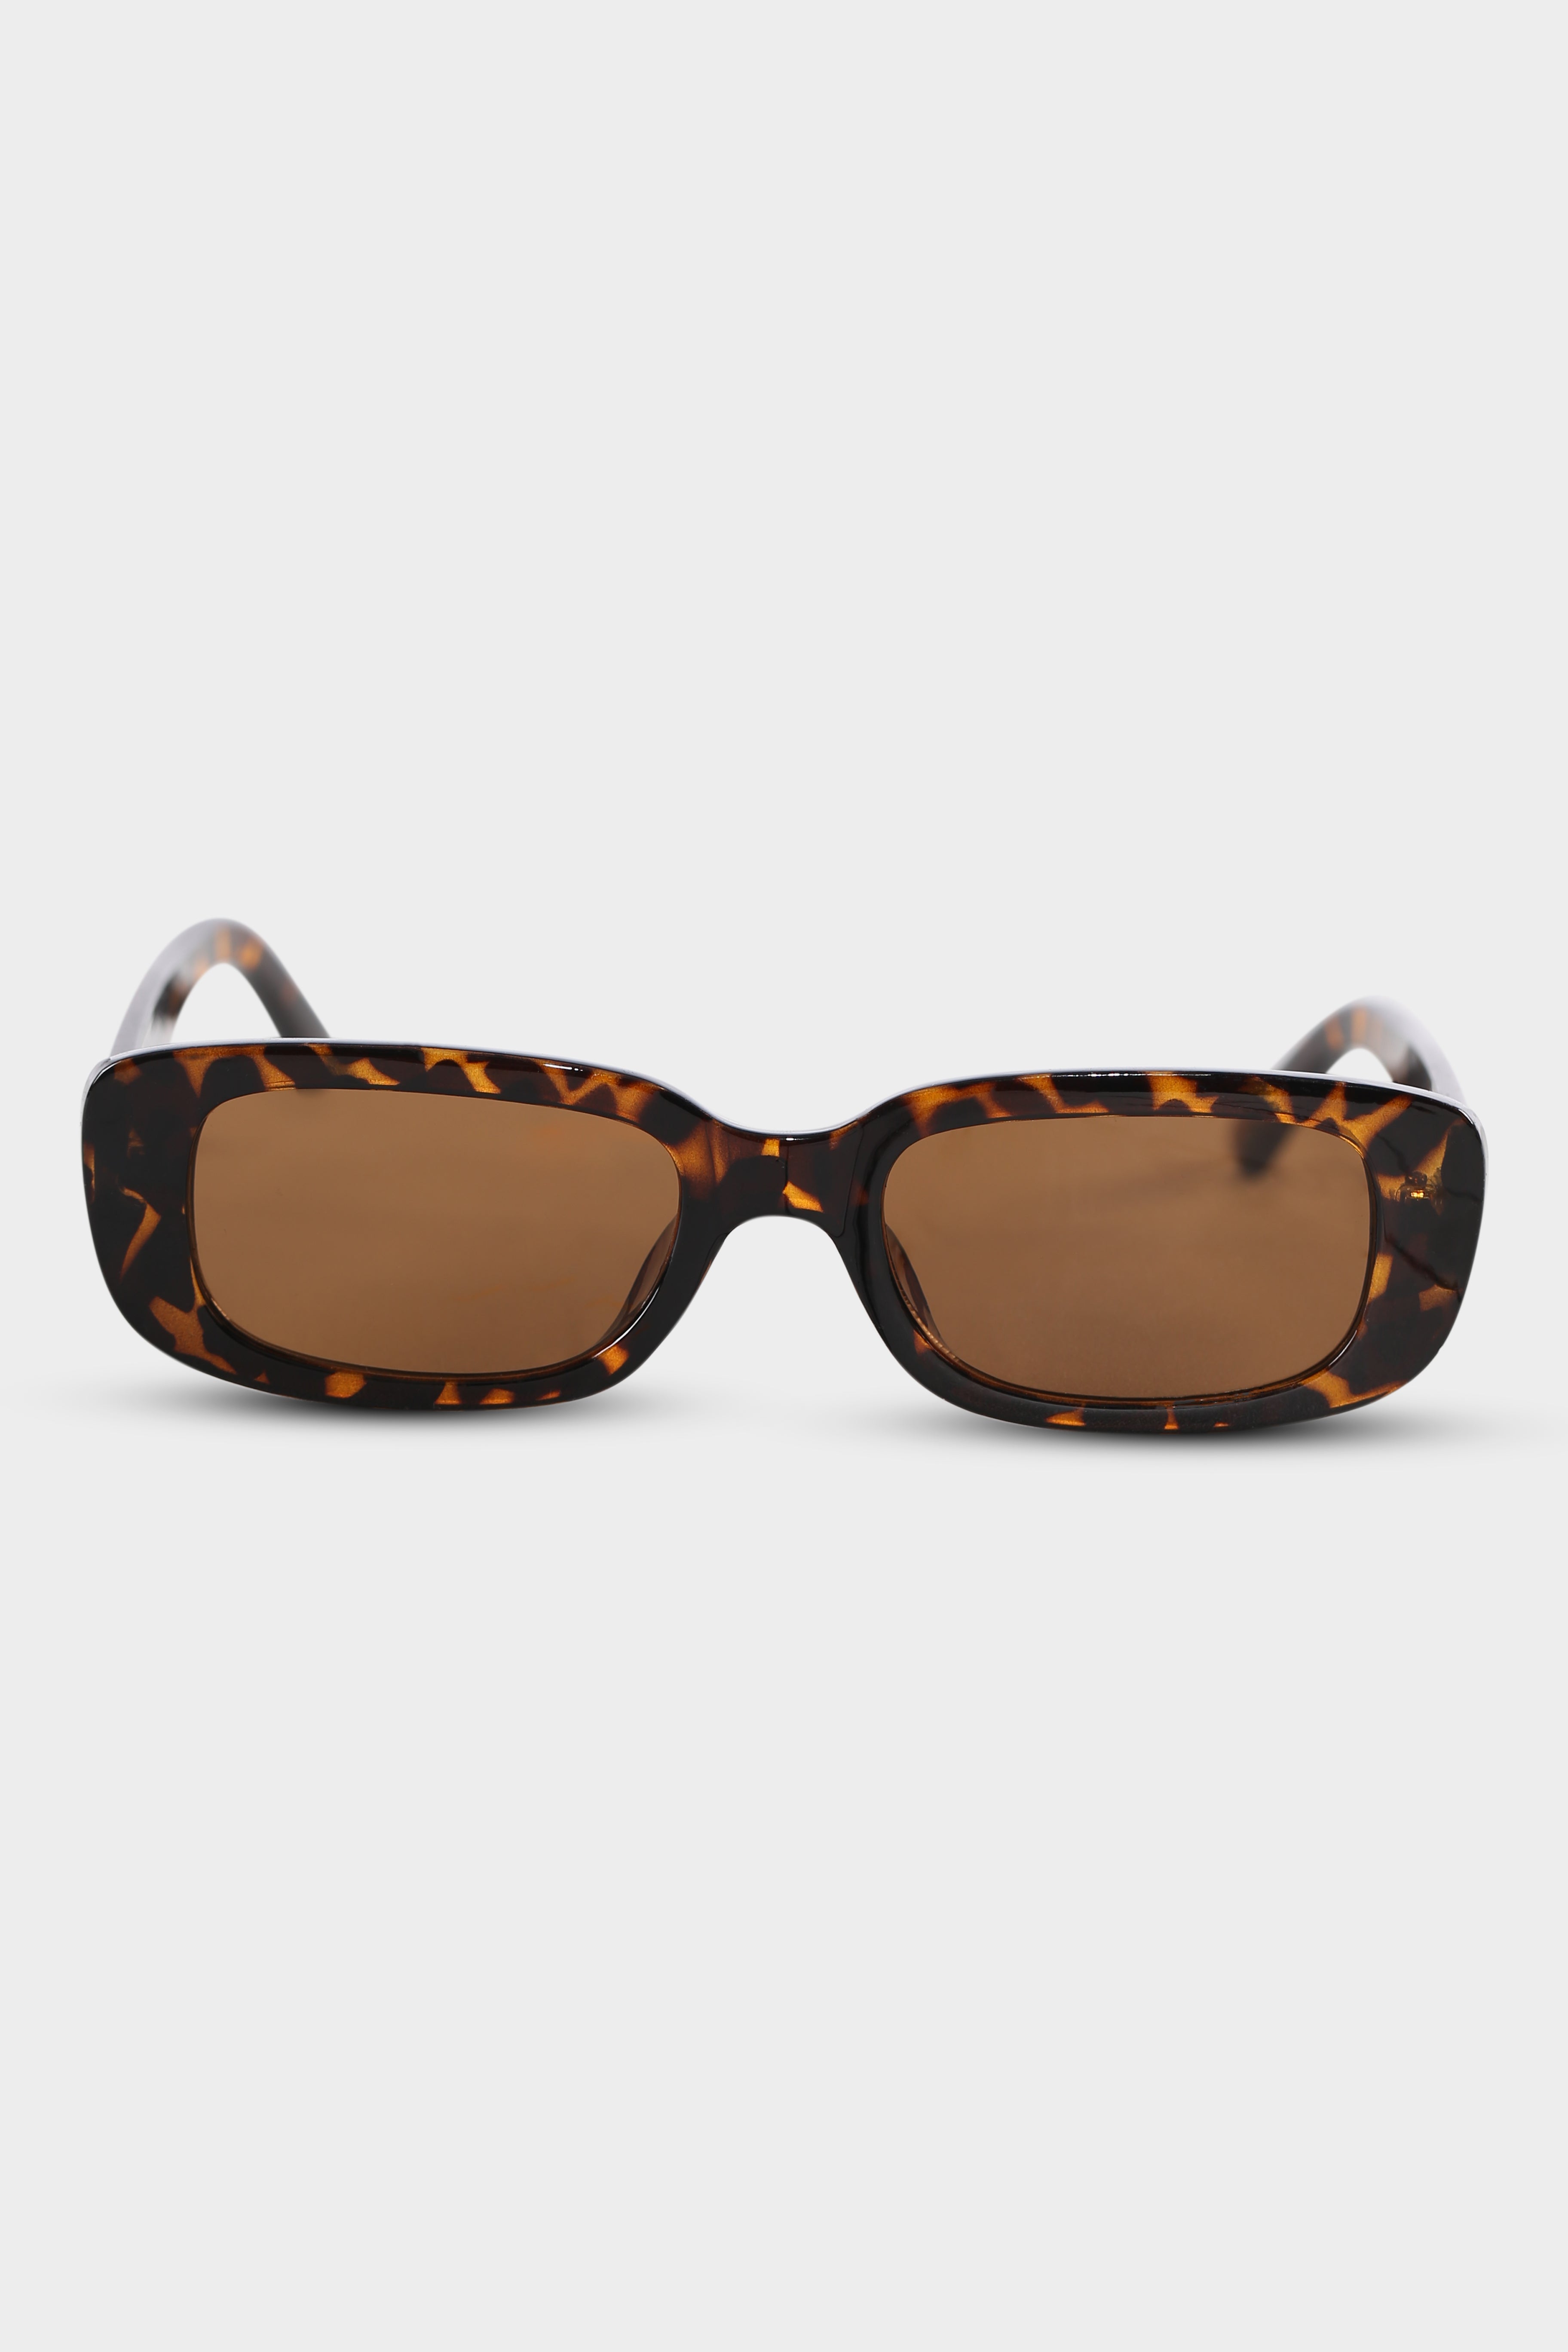 Sixth Avenue Sunglasses Tort Mocha